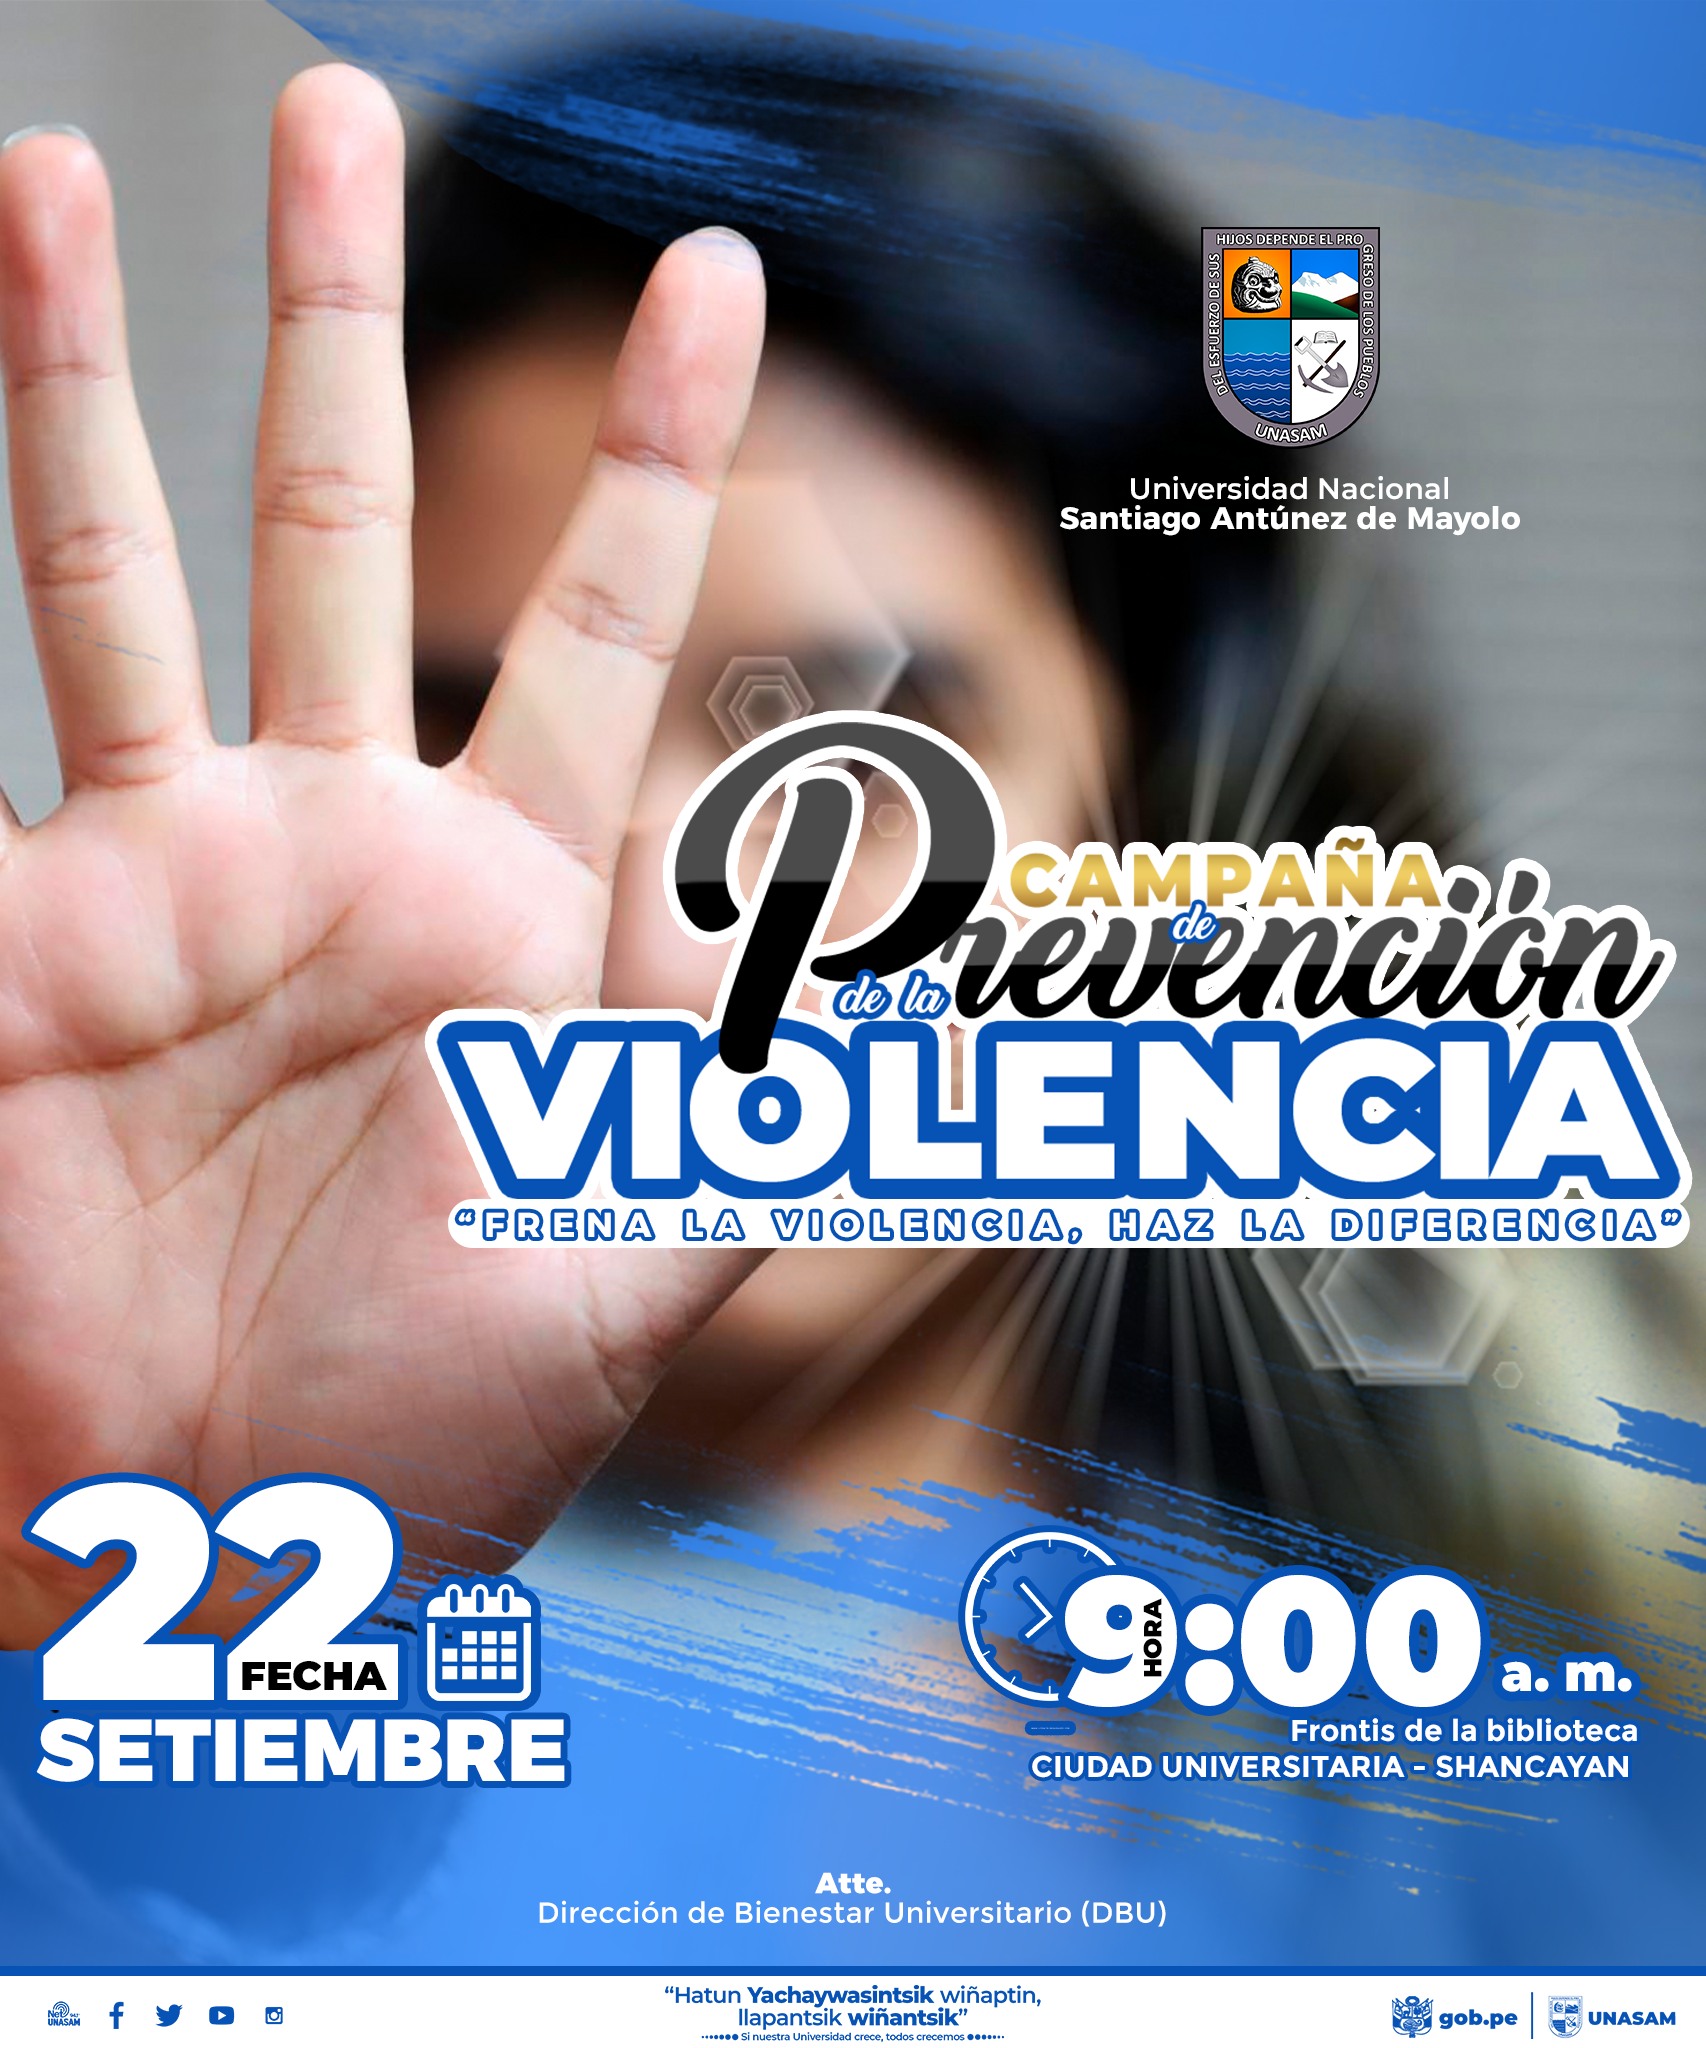  																Campaña de prevención de la violencia
																